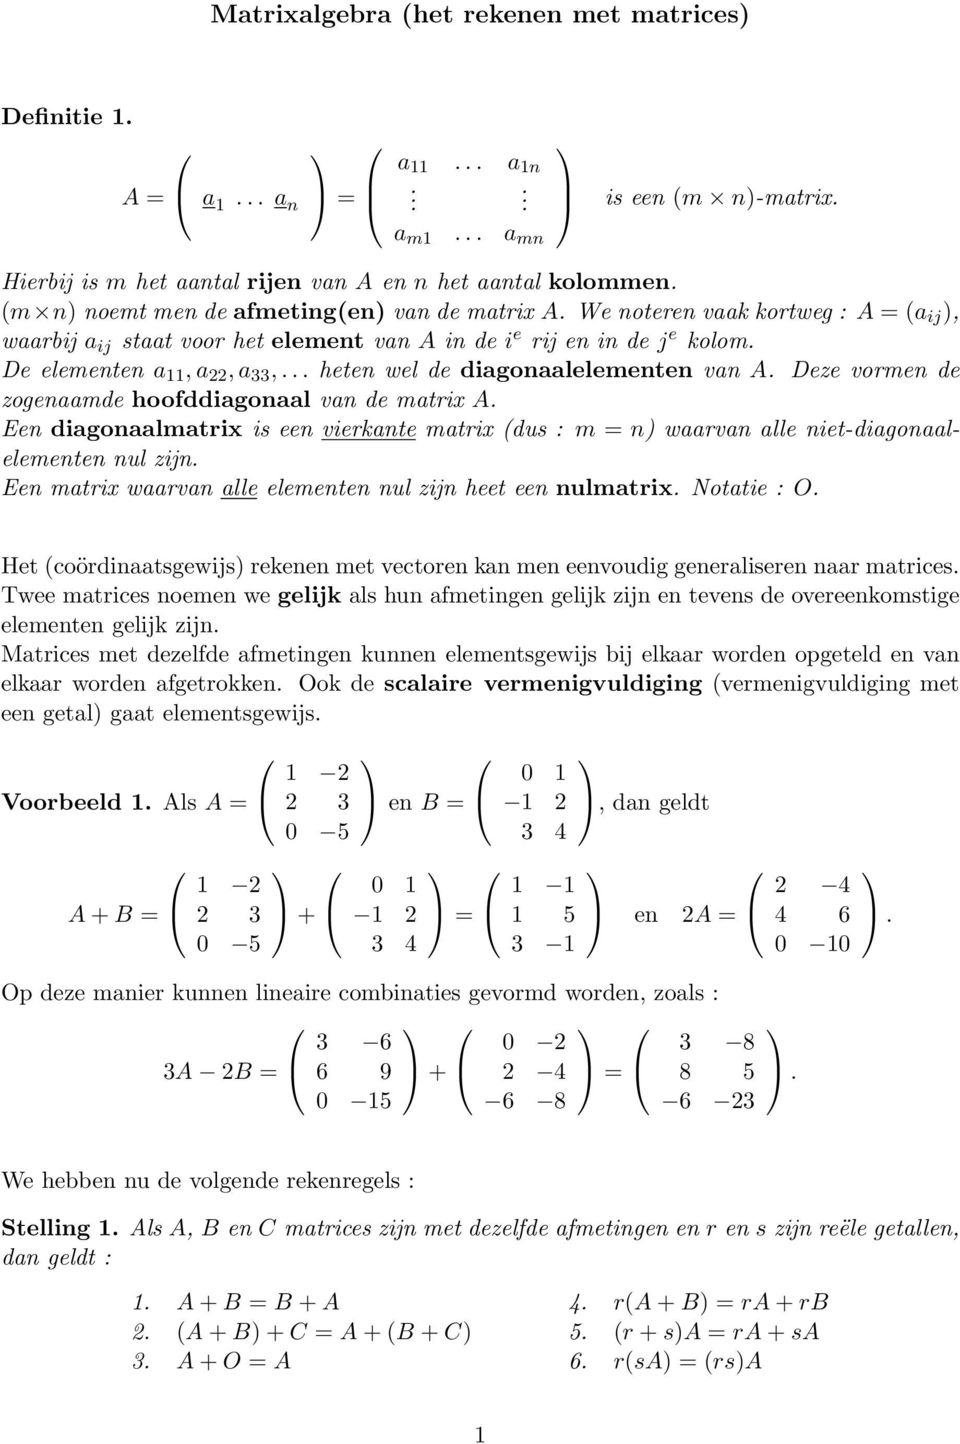 diagonaalmatrix is e vierkante matrix (dus : m n waarvan alle niet-diagonaalelemt nul zijn E matrix waarvan alle elemt nul zijn heet e nulmatrix Notatie : O Het (coördinaatsgewijs rek met vector kan